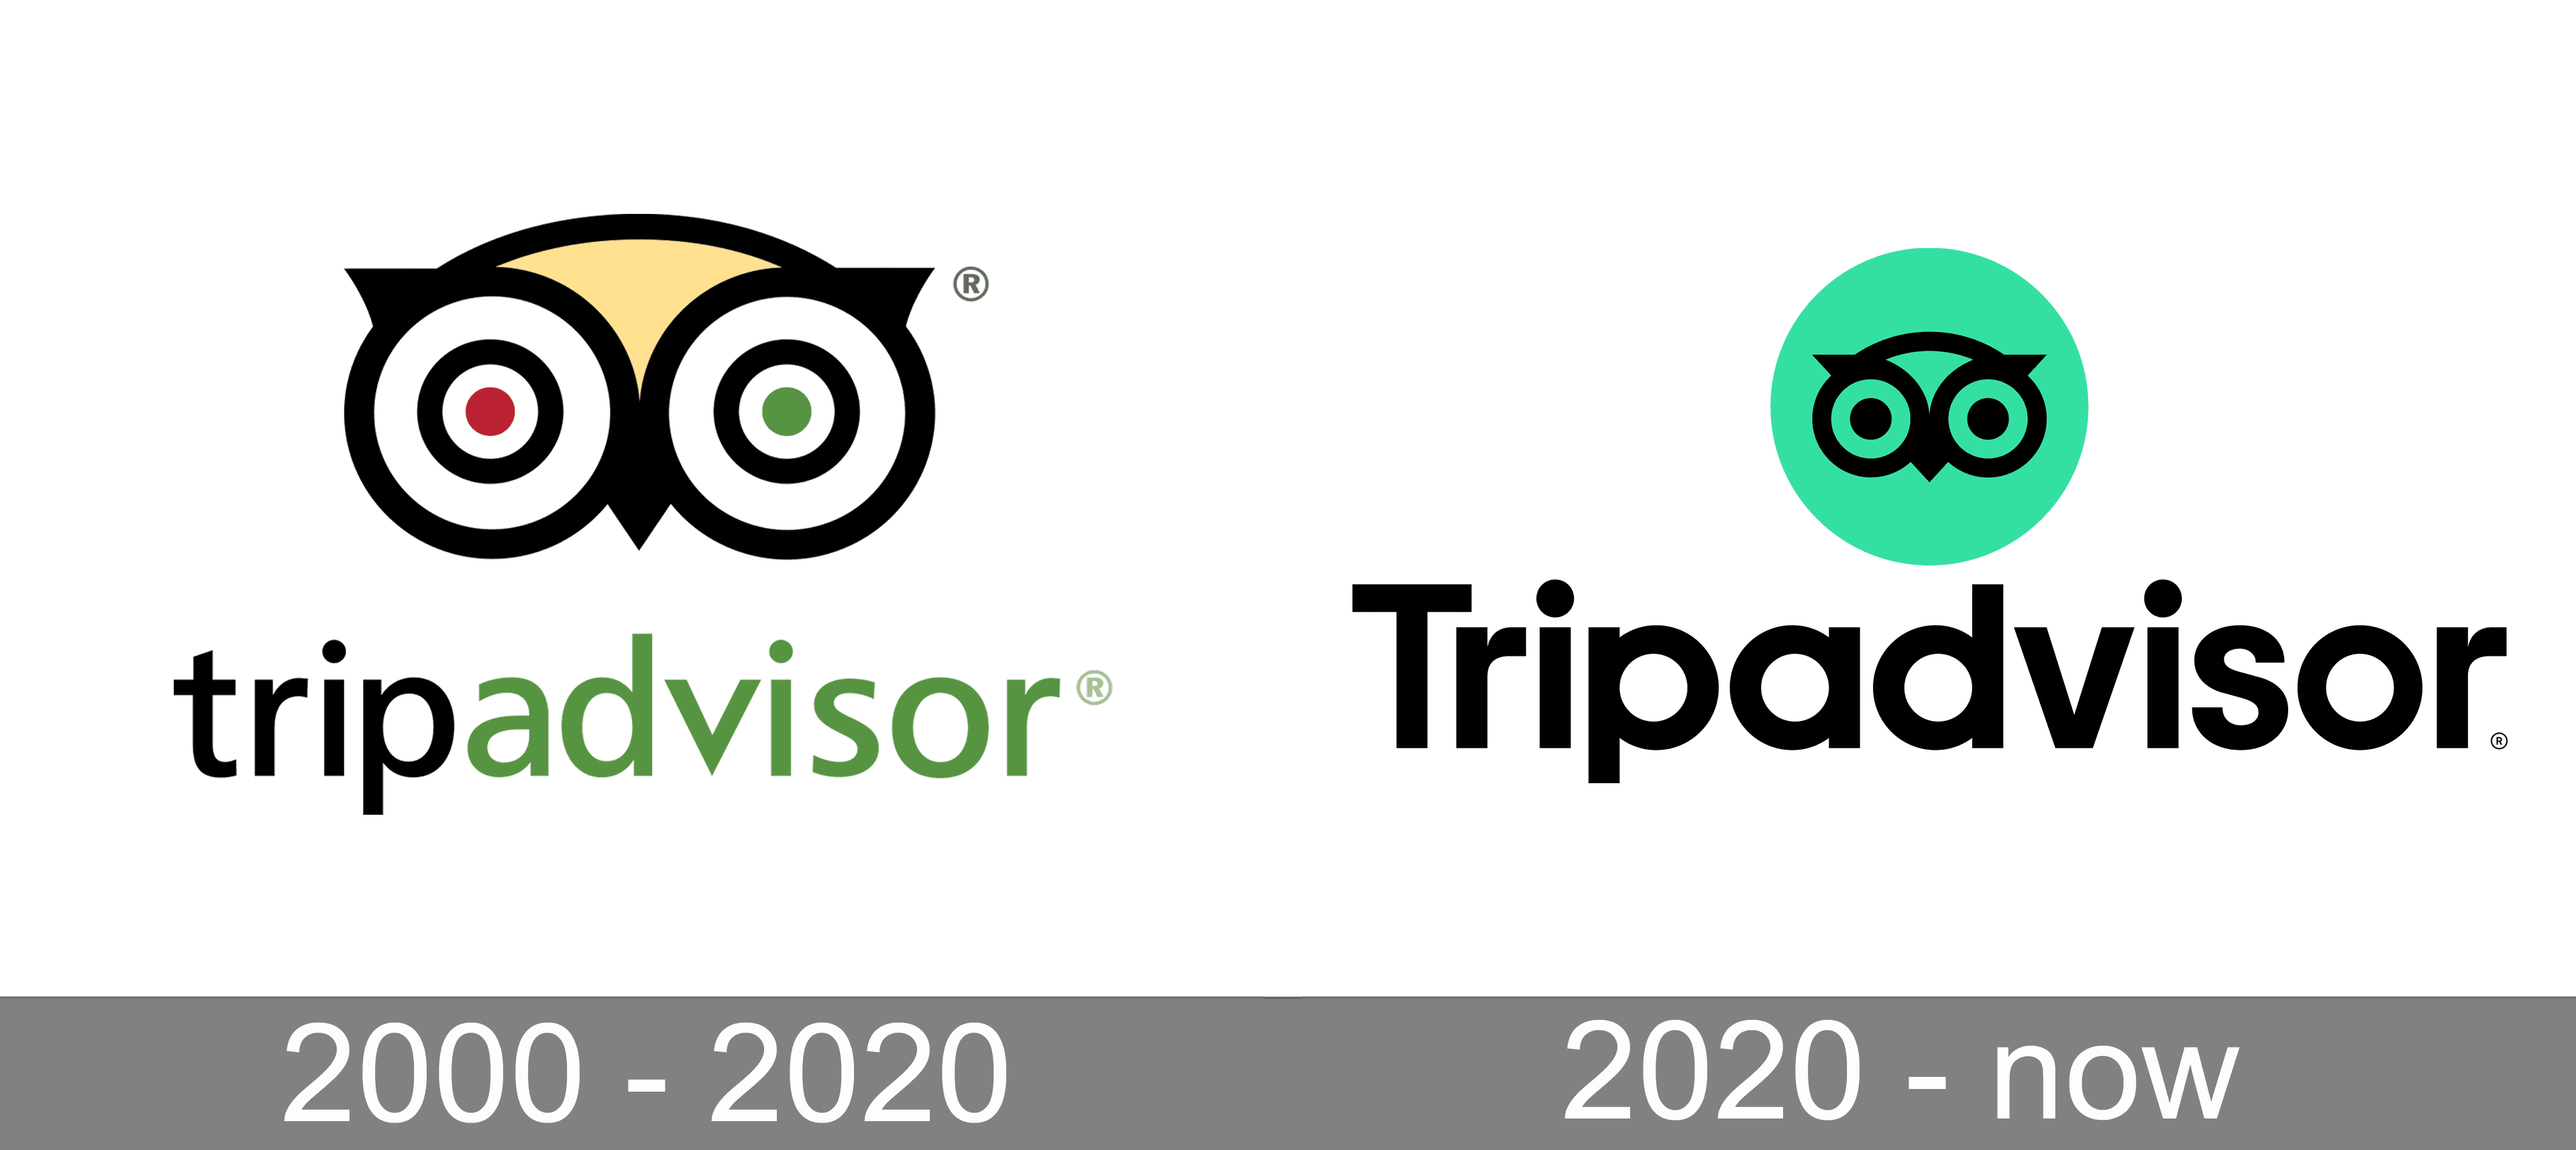 Tripadvisor